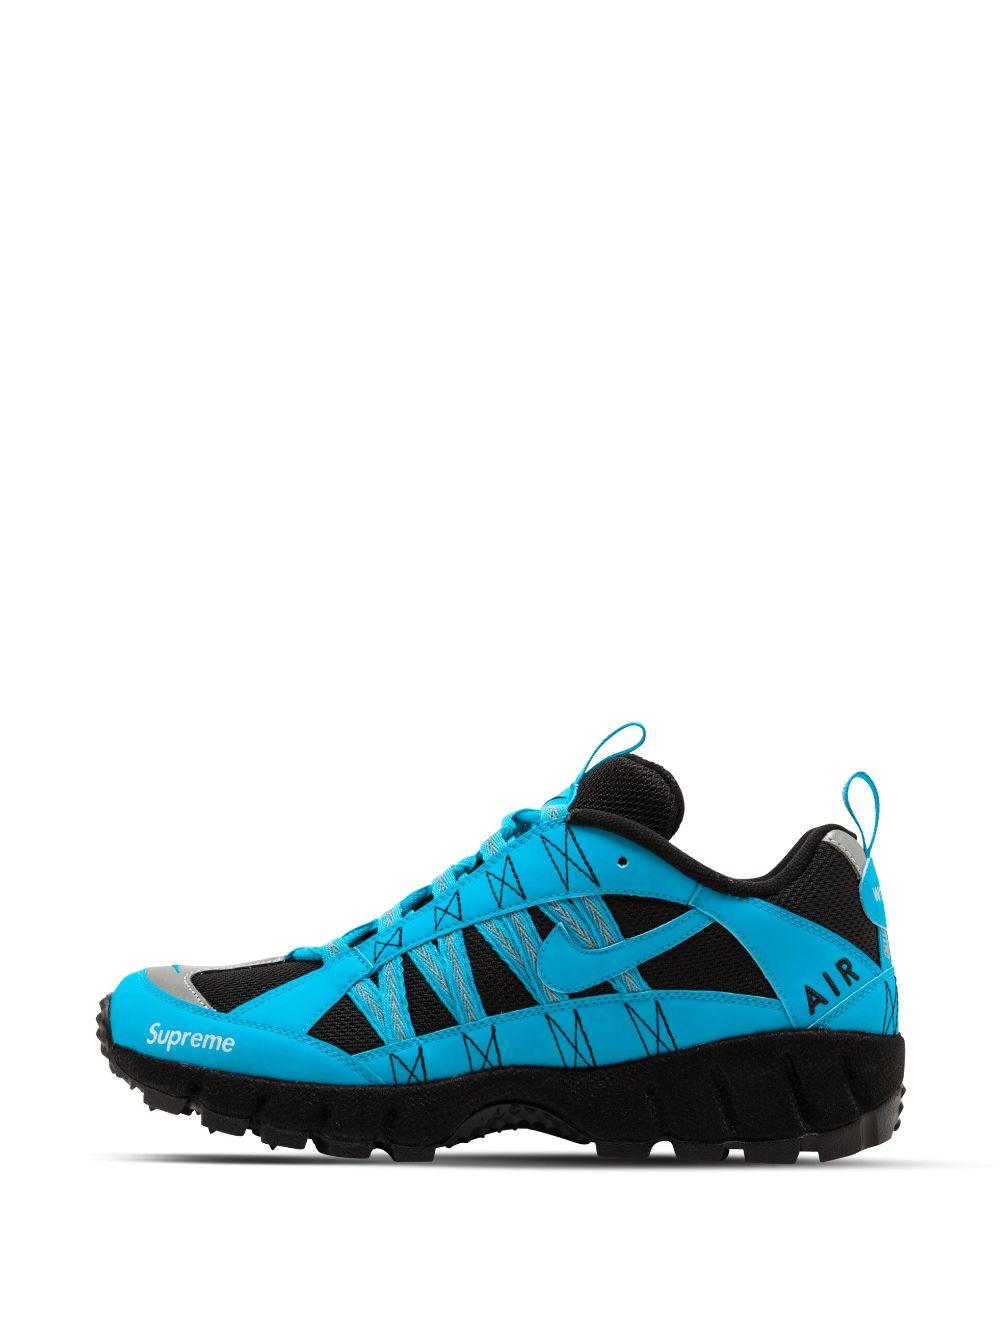 Nike X Supreme Air Humara '17 "blue" Sneakers for Men | Lyst